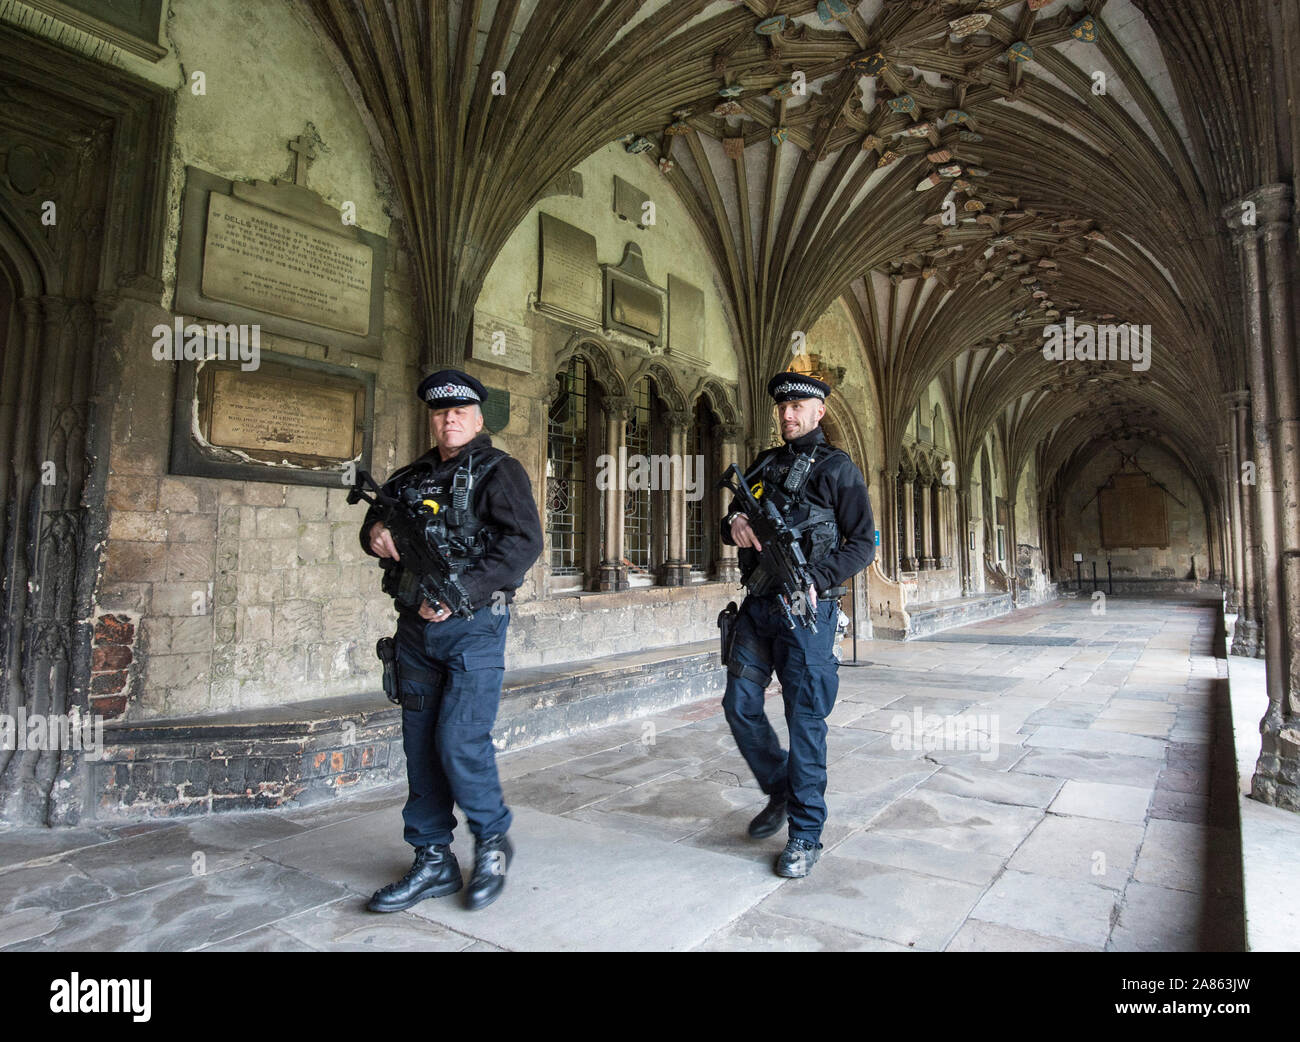 Bewaffnete Polizisten patrouillieren die Kathedrale von Canterbury in Kent auf Mitglieder der Öffentlichkeit nach den Terroranschlaegen auf dem Weihnachtsmarkt Festivals in Berlin im Dezember 2016 beruhigen. Stockfoto